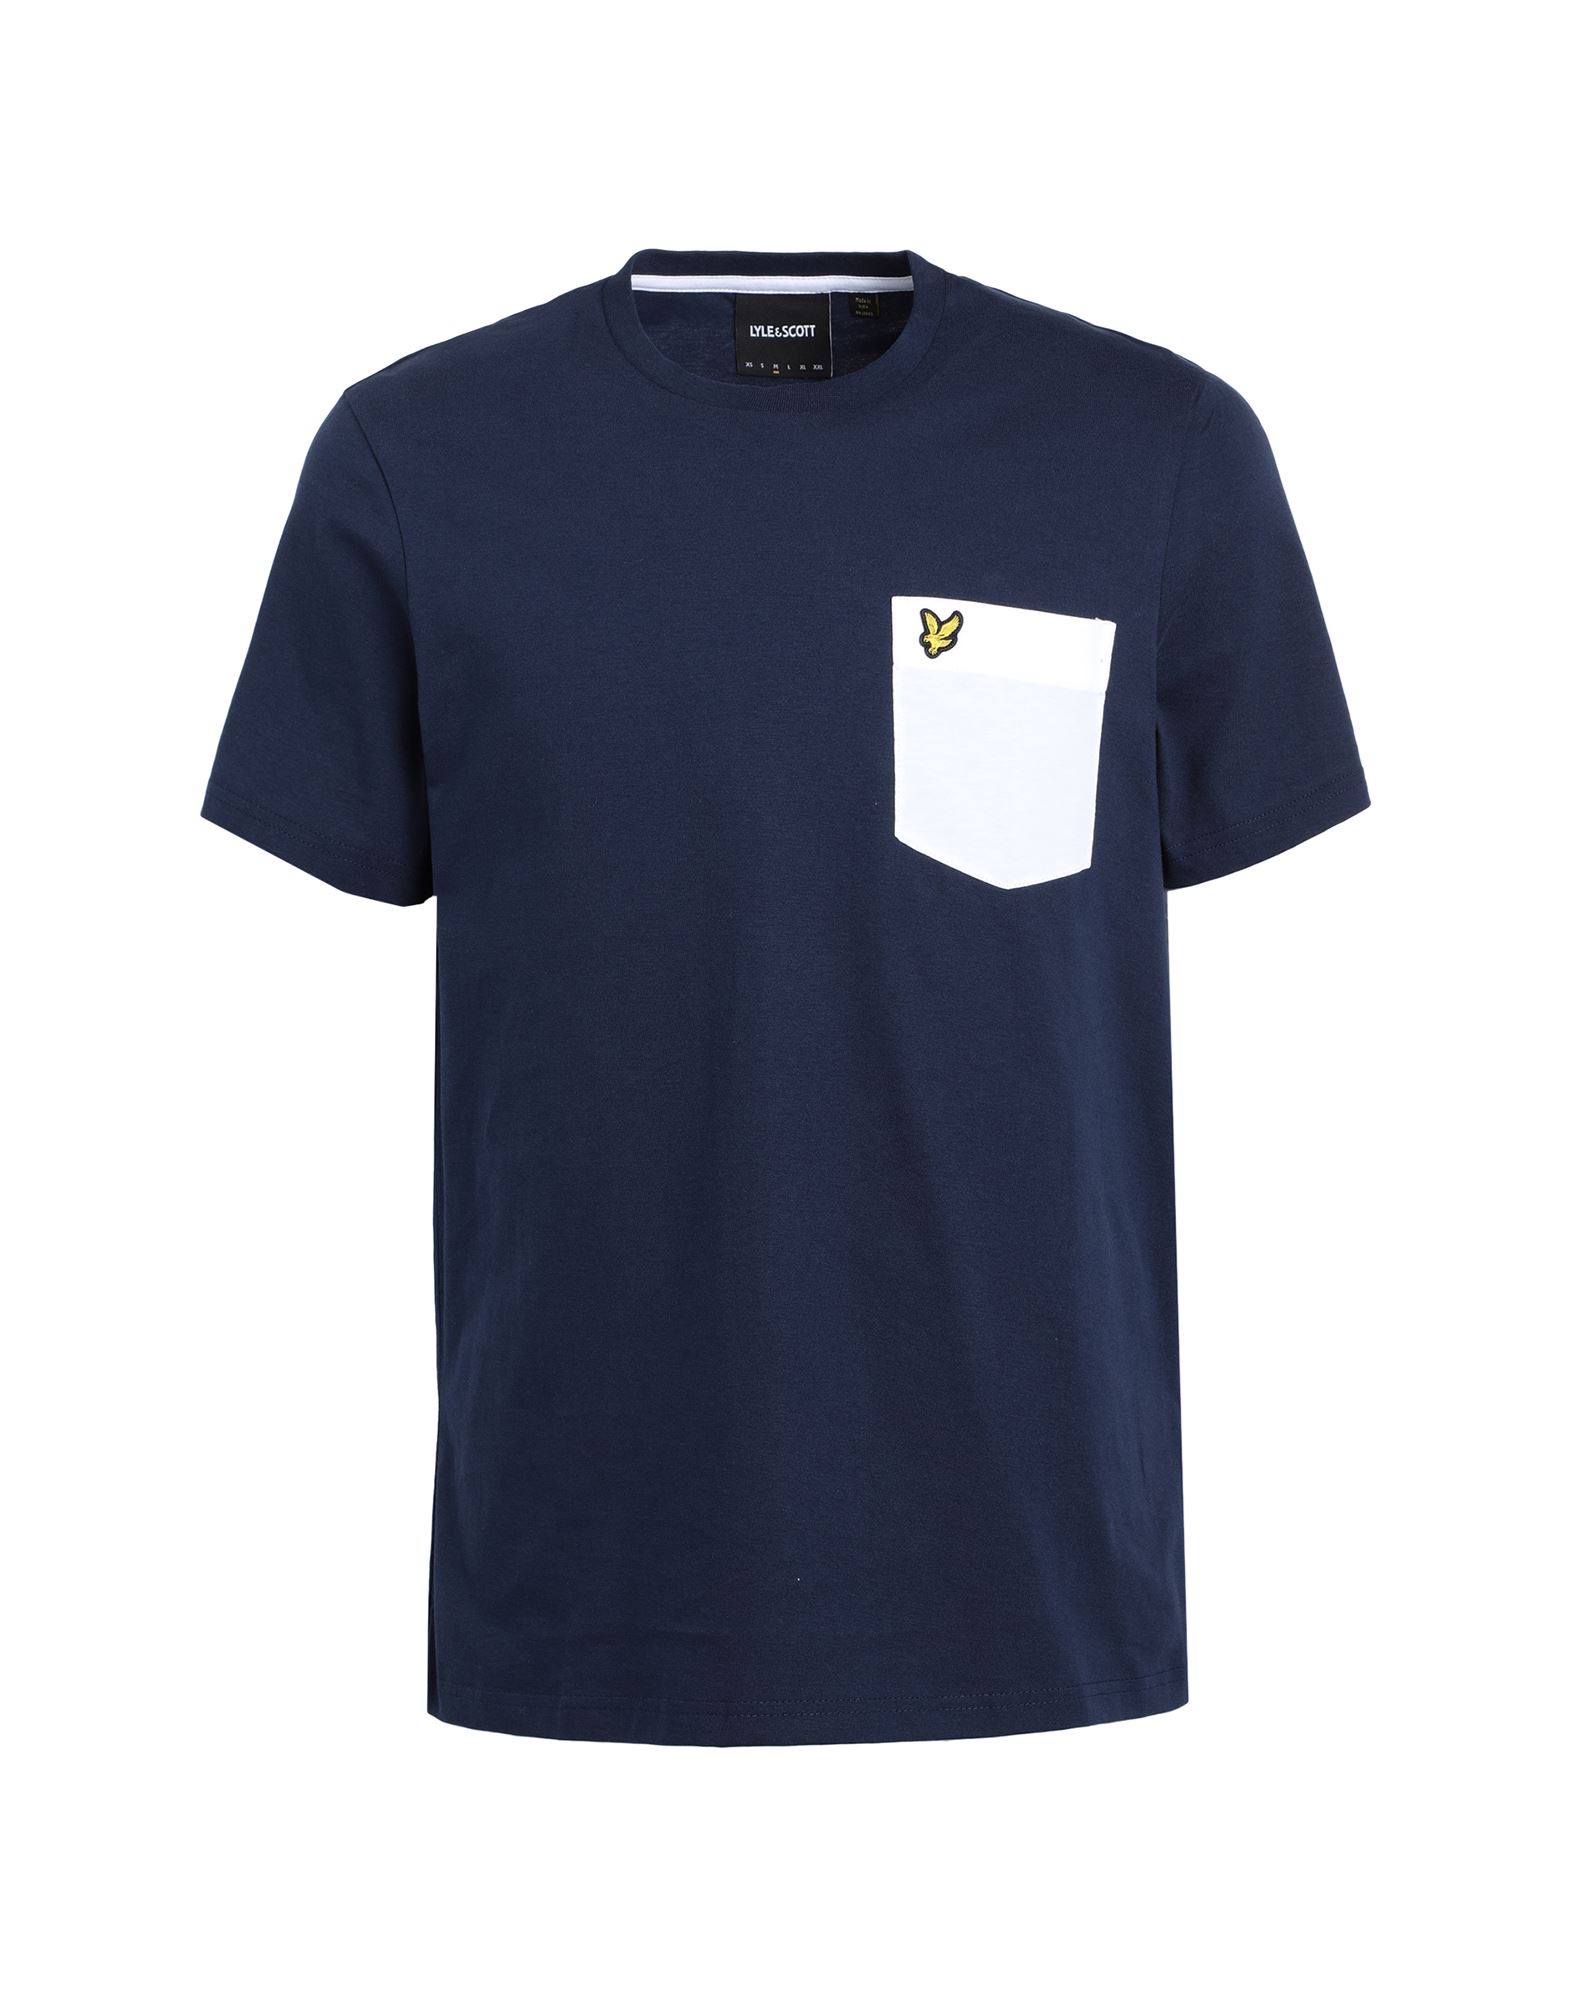 Lyle & Scott Man T-shirt Navy Blue Size M Cotton